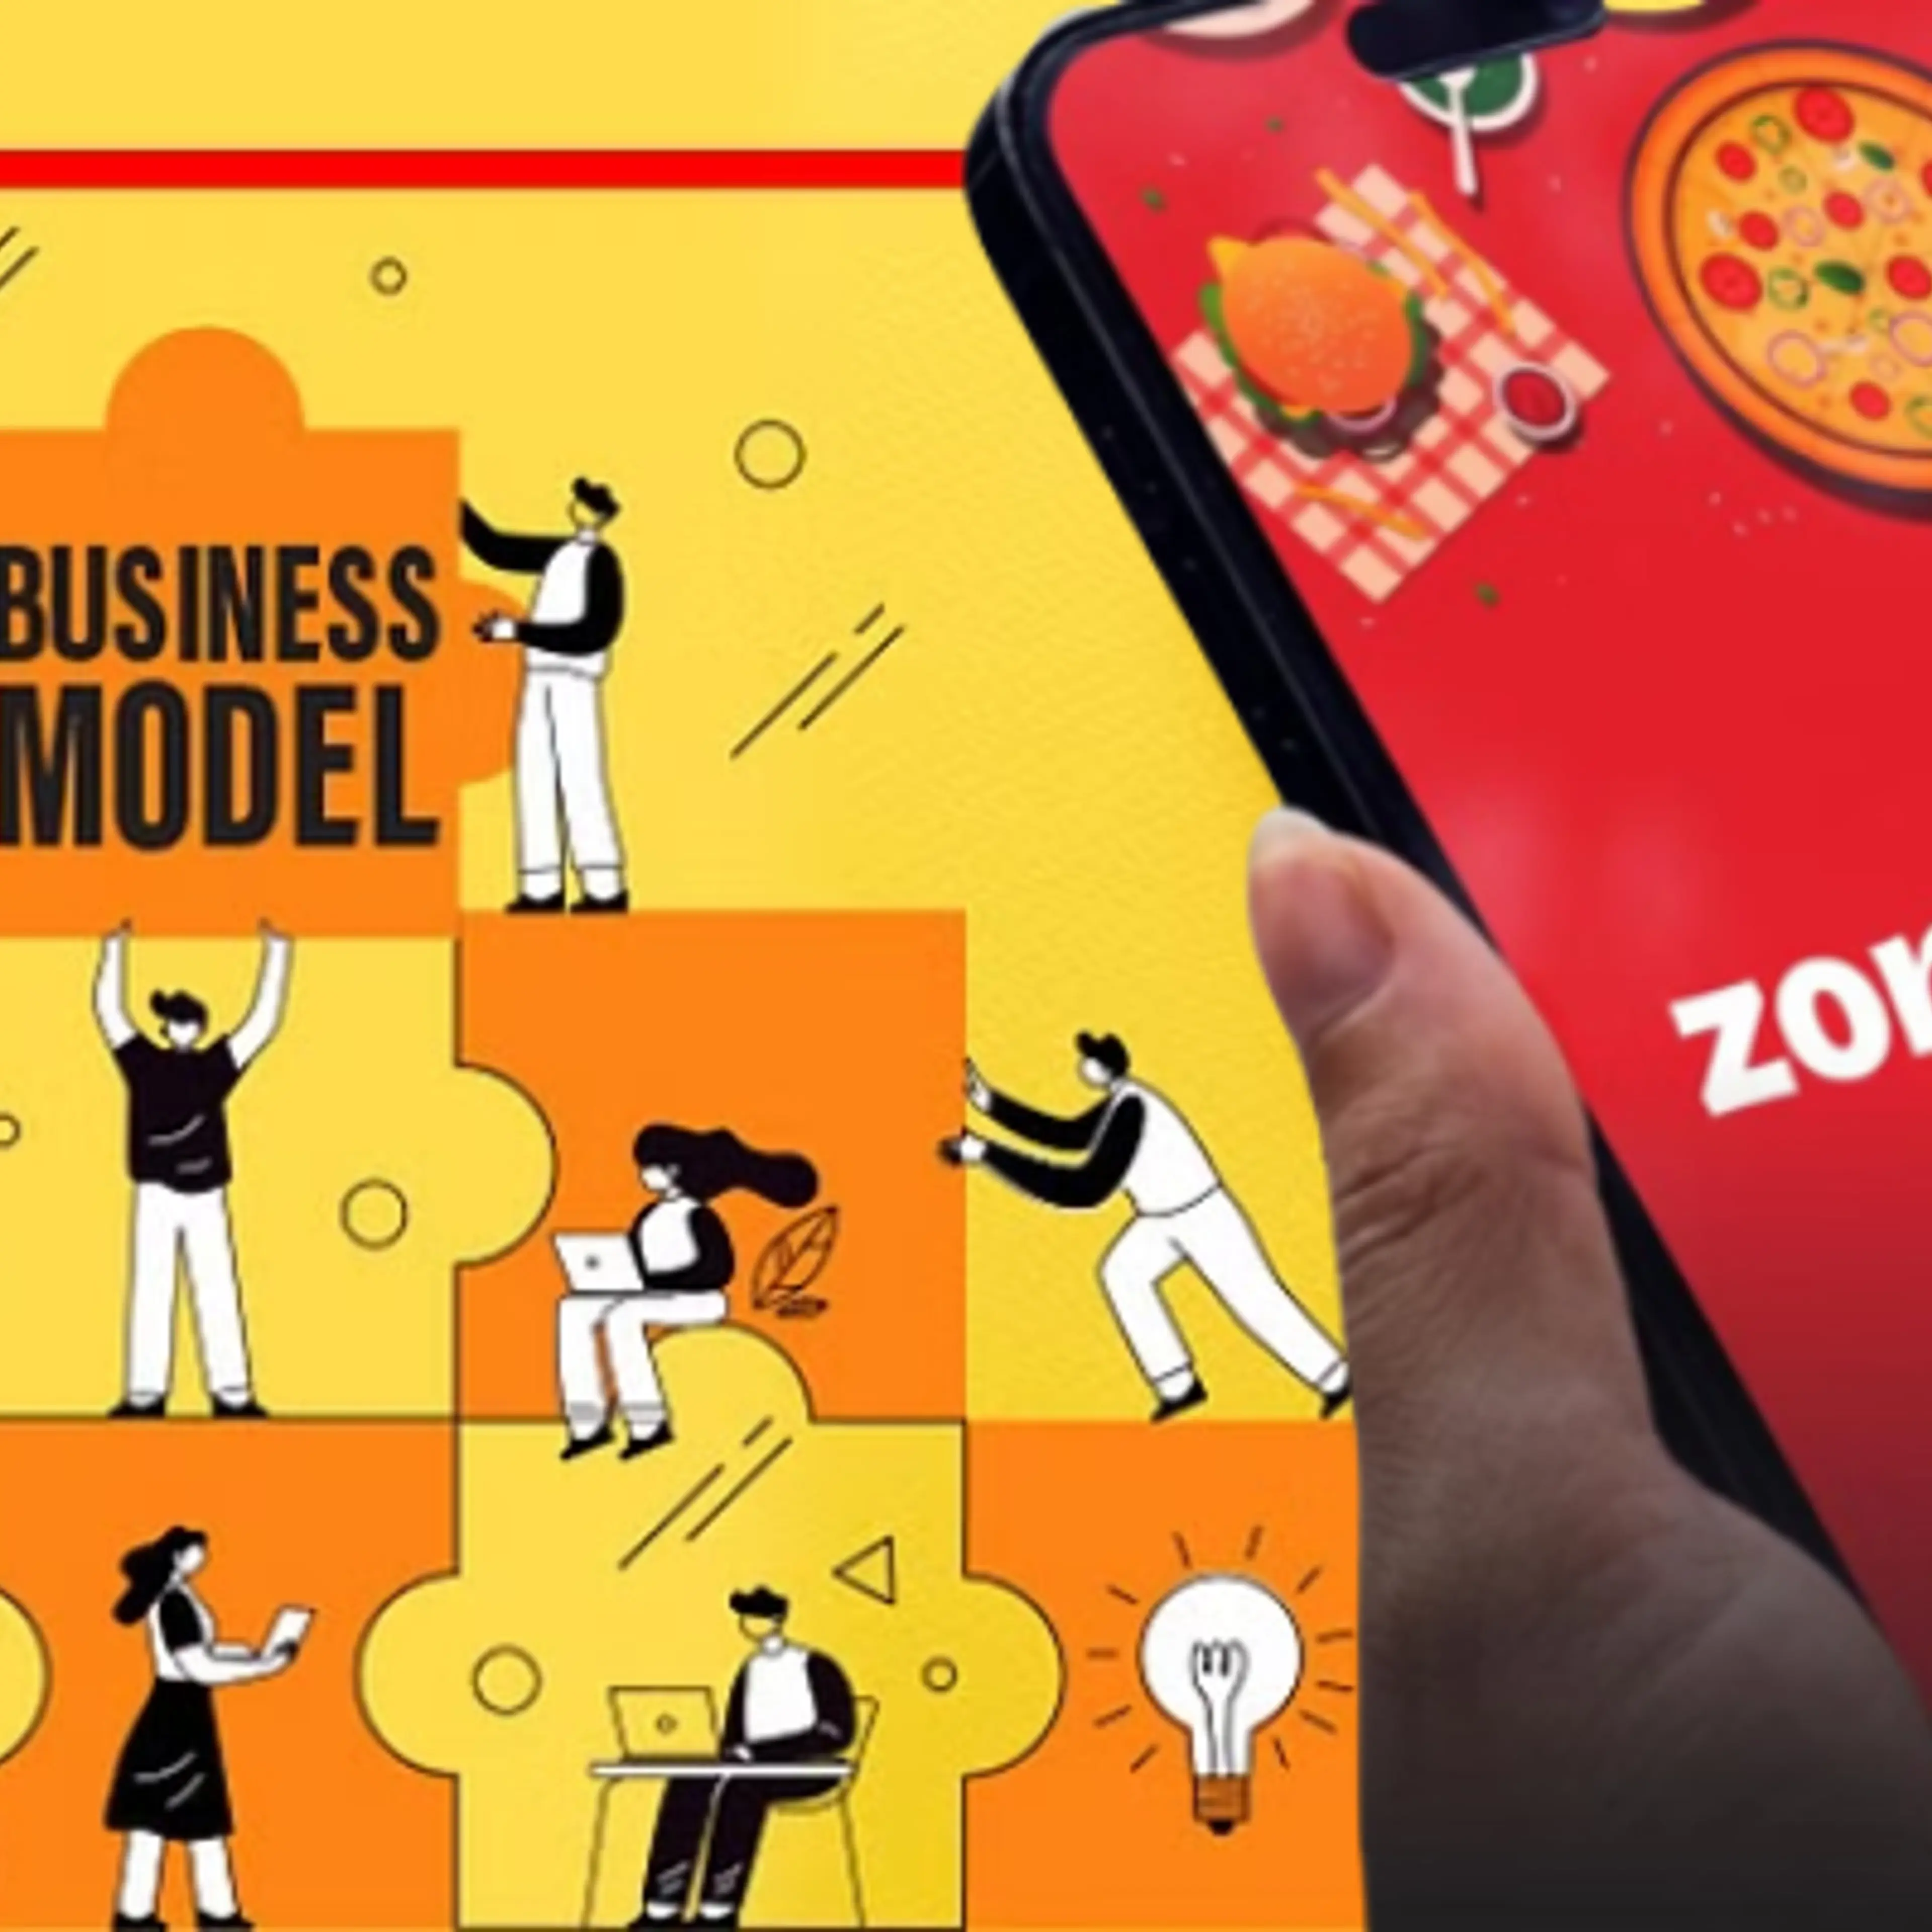 जानिए क्या है Zomato का बिजनेस मॉडल, कंपनी किन-किन तरीकों से कमाती है पैसे